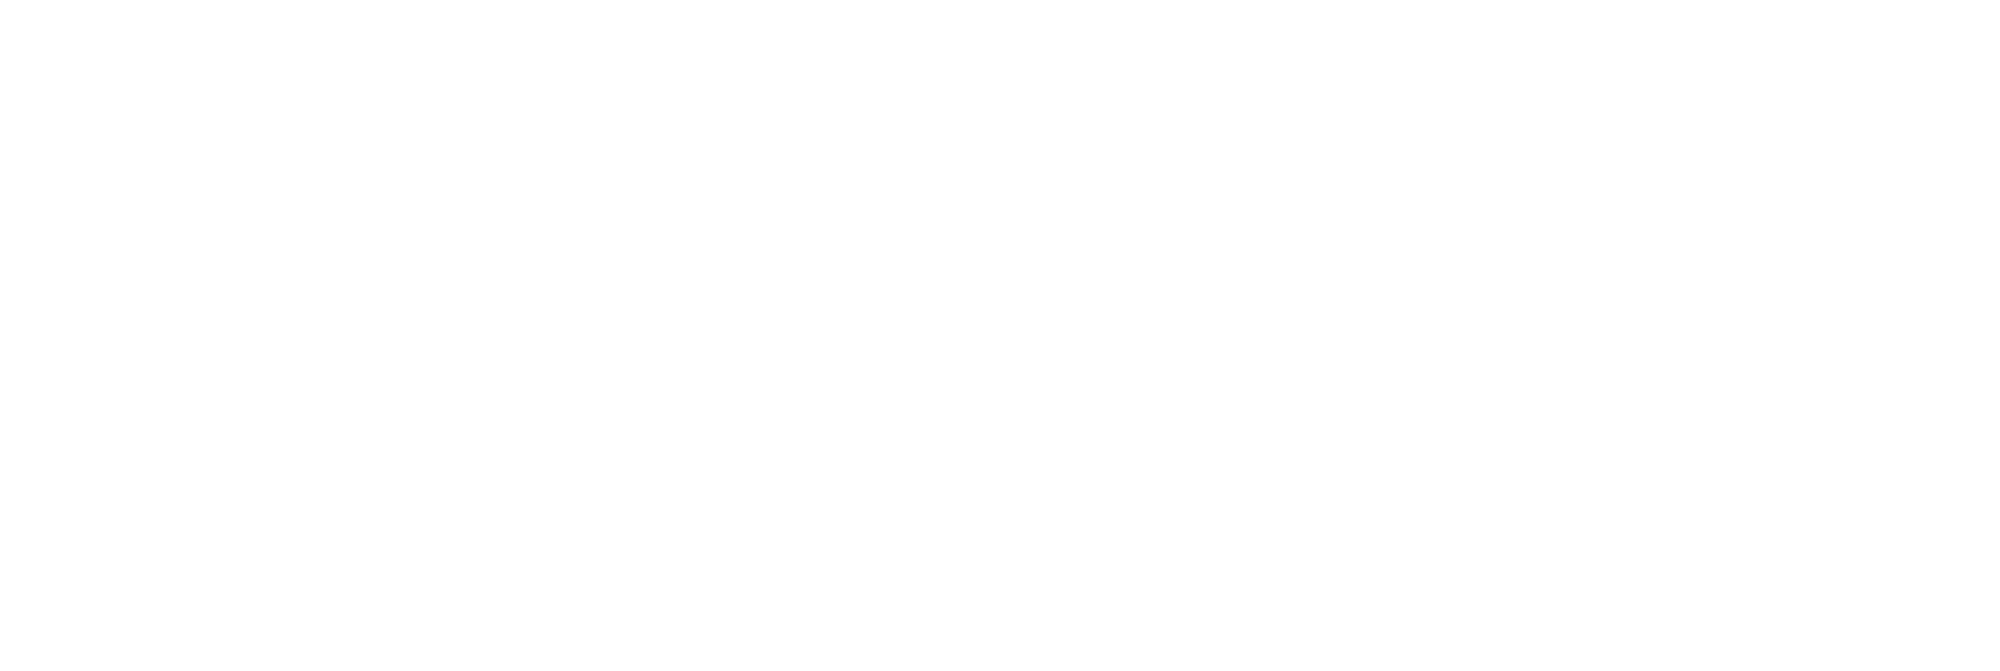 Treat Bites